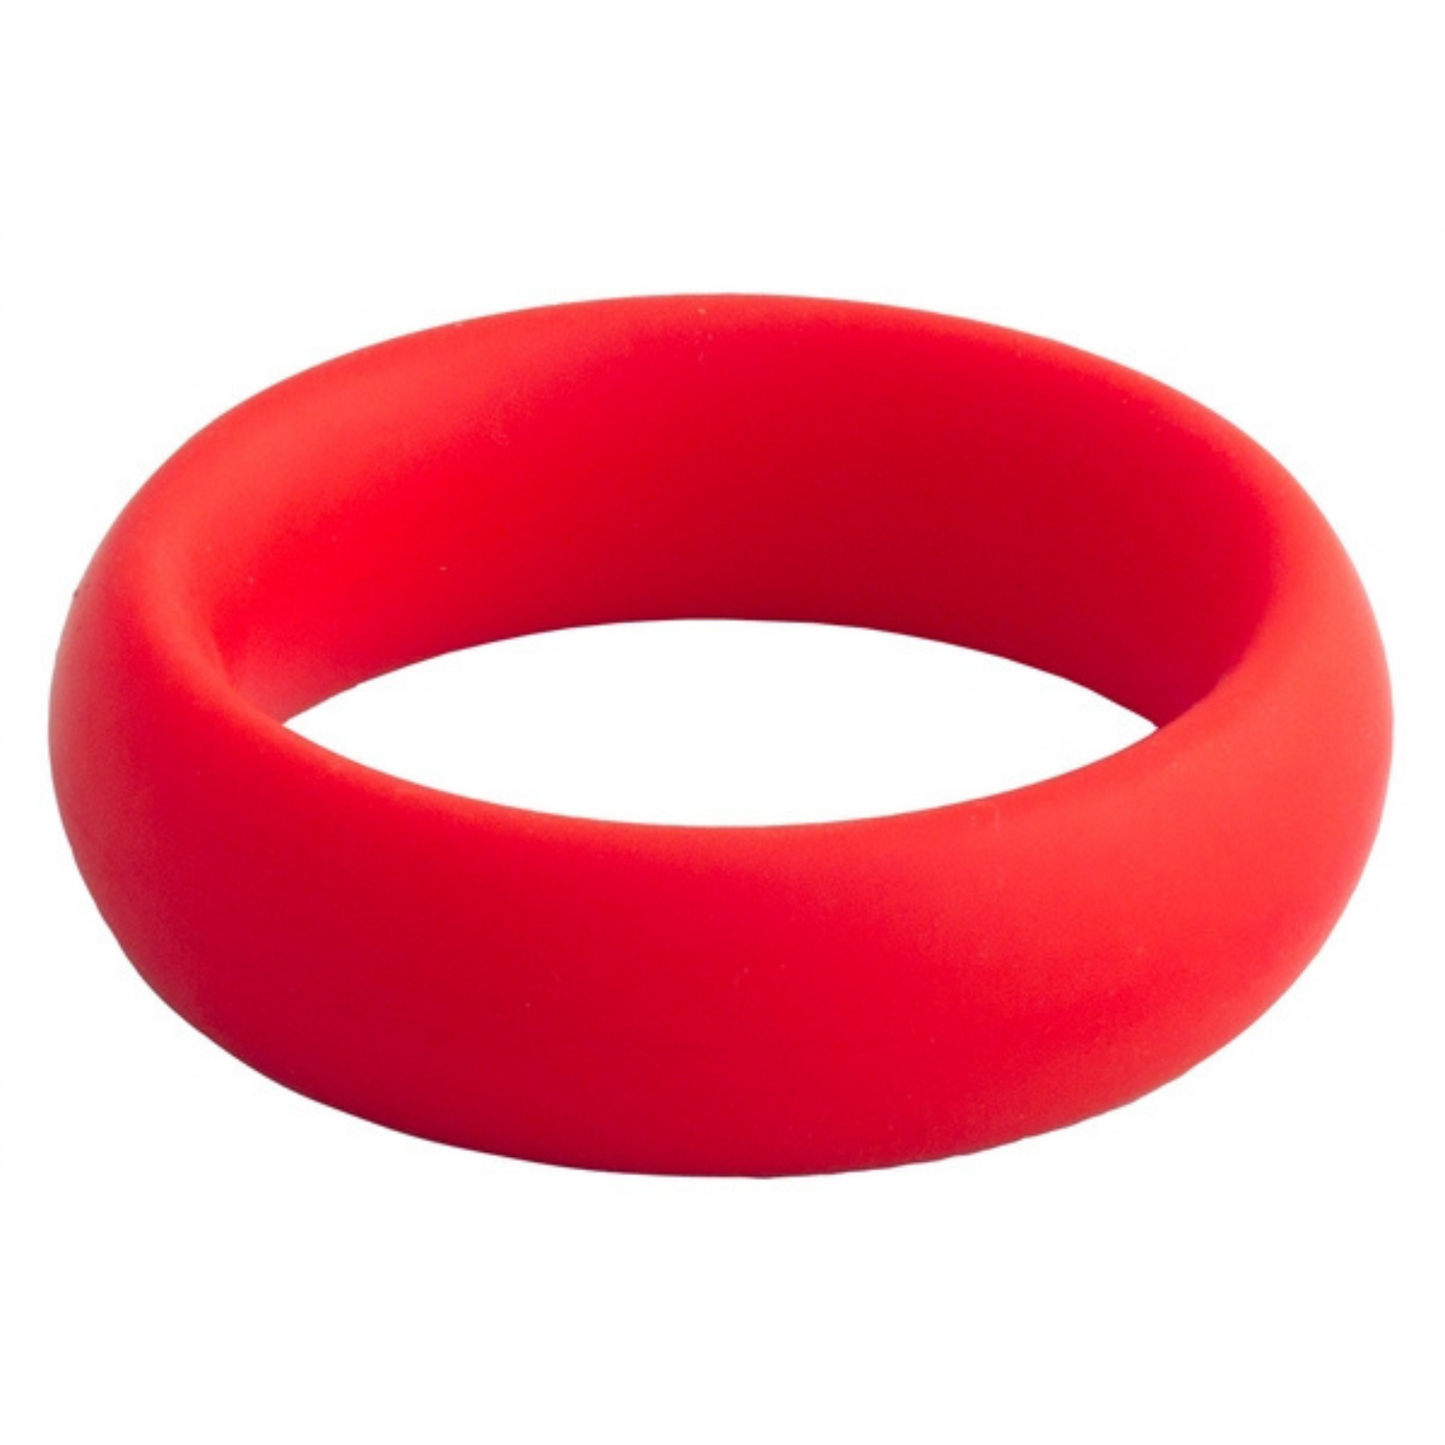 Rode donut cockring met een diameter van 50 mm. Ontworpen door Mister B voor gay mannen en te koop bij Flavourez.